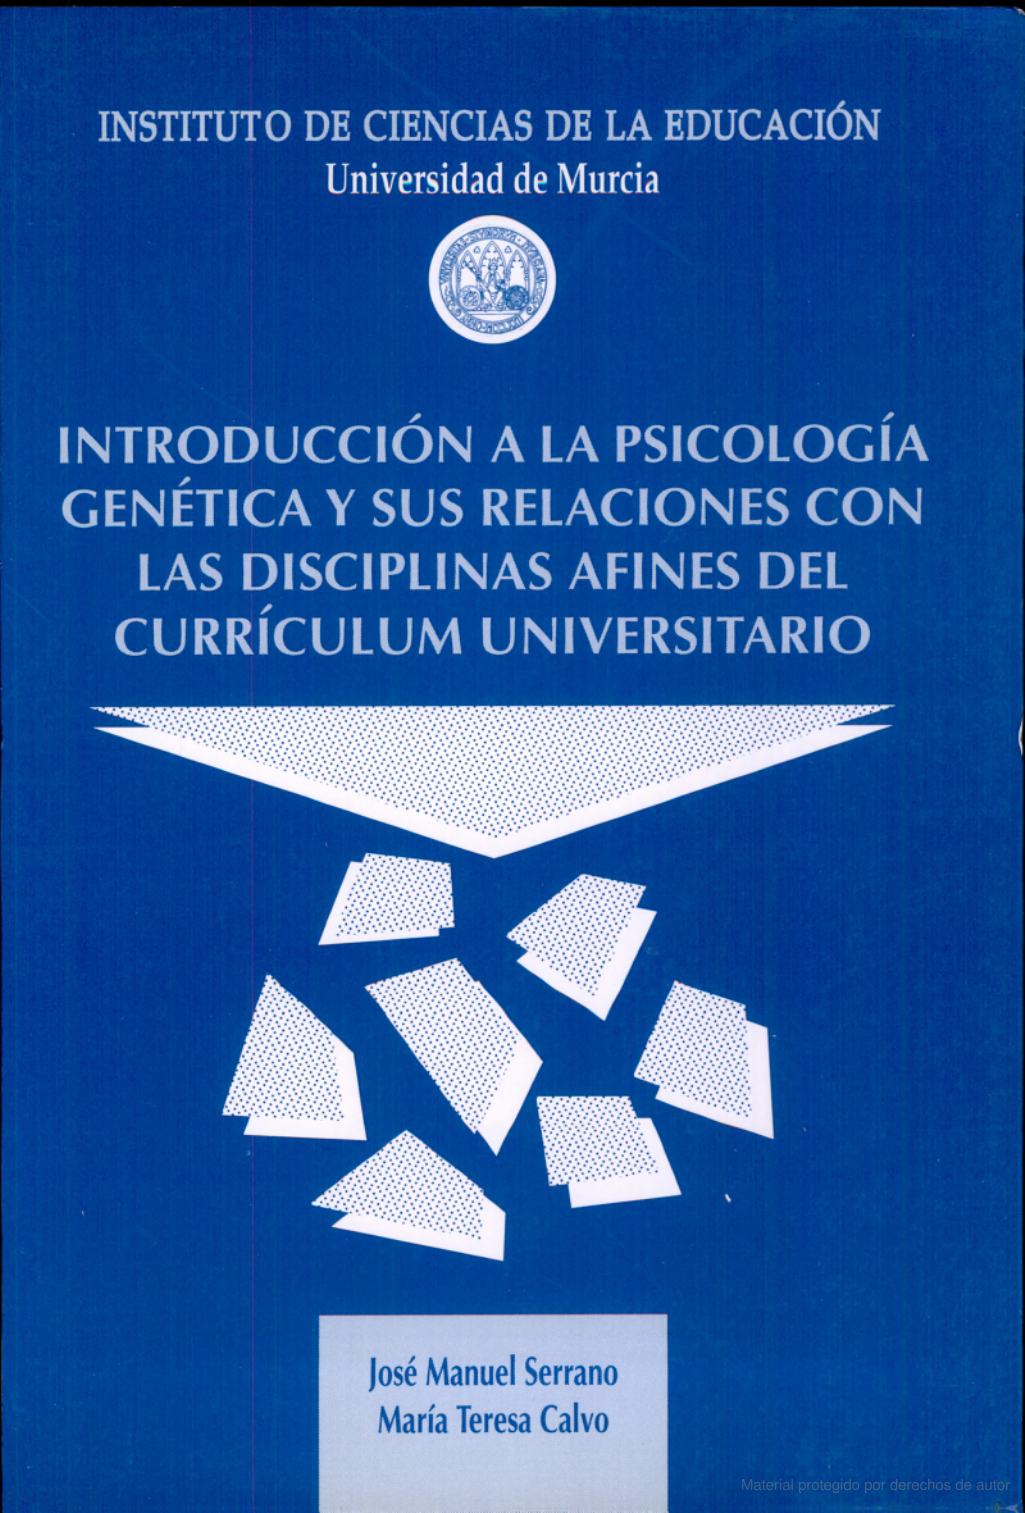 Imagen de portada del libro Introducción a la psicología genética y sus relaciones con las disciplinas afines del currículum universitario